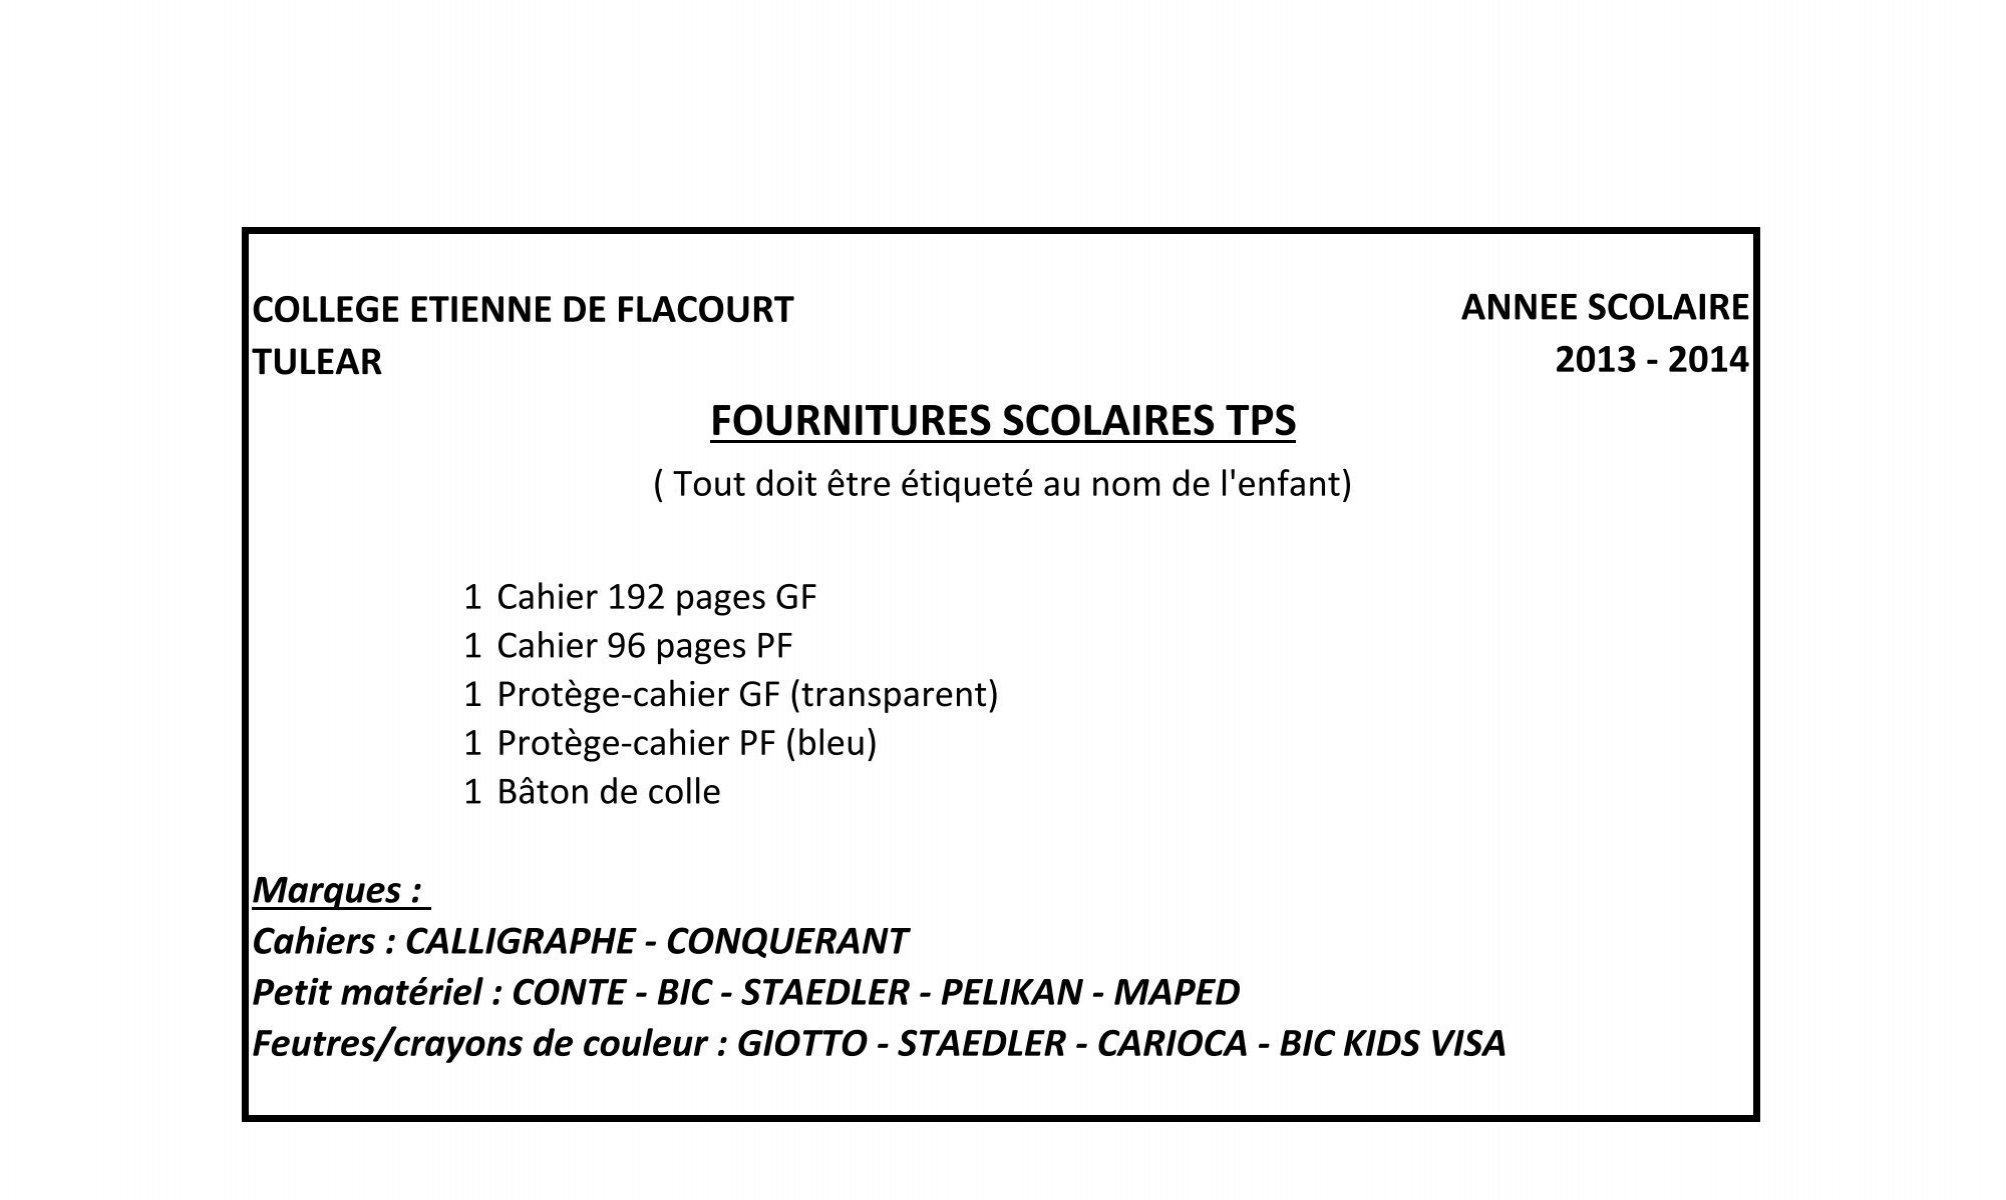 liste des fournitures scolaires 2013-2014 - CollÃ¨ge FranÃ§ais de TulÃ©ar